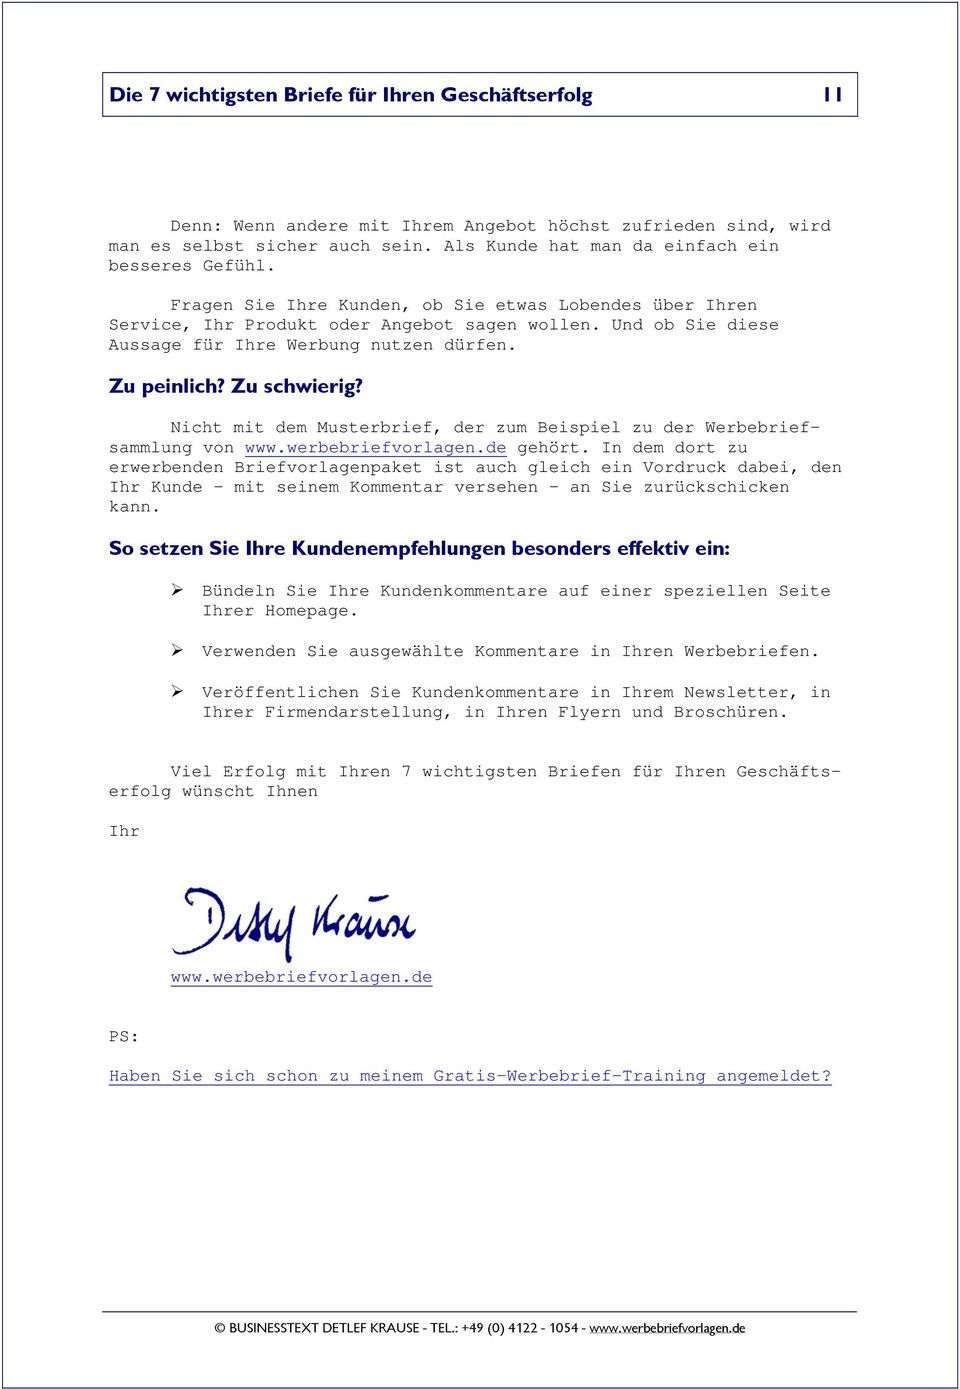 Nicht mit dem Musterbrief, der zum Beispiel zu der Werbebriefsammlung von www.werbebriefvorlagen.de gehört.